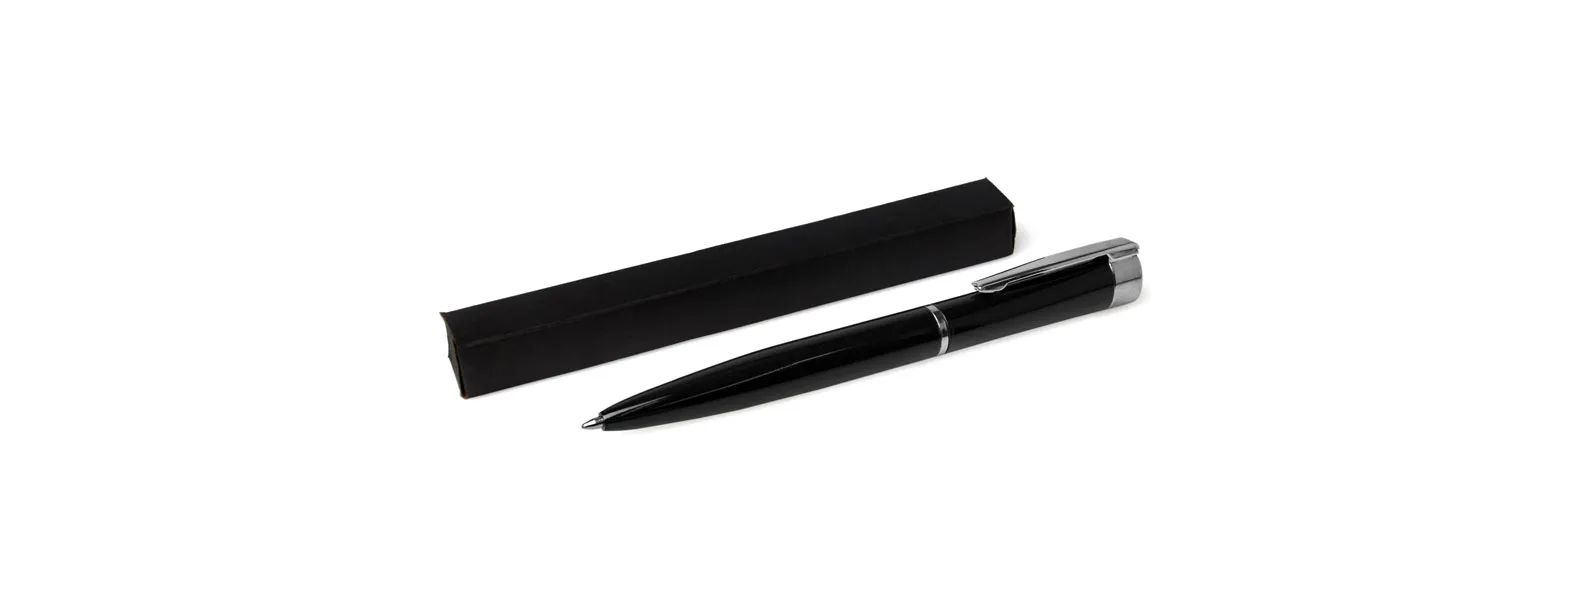 Caneta confeccionada em alumínio preto com detalhes cromado. Carga esferográfica azul, acionada com um giro no corpo da caneta.